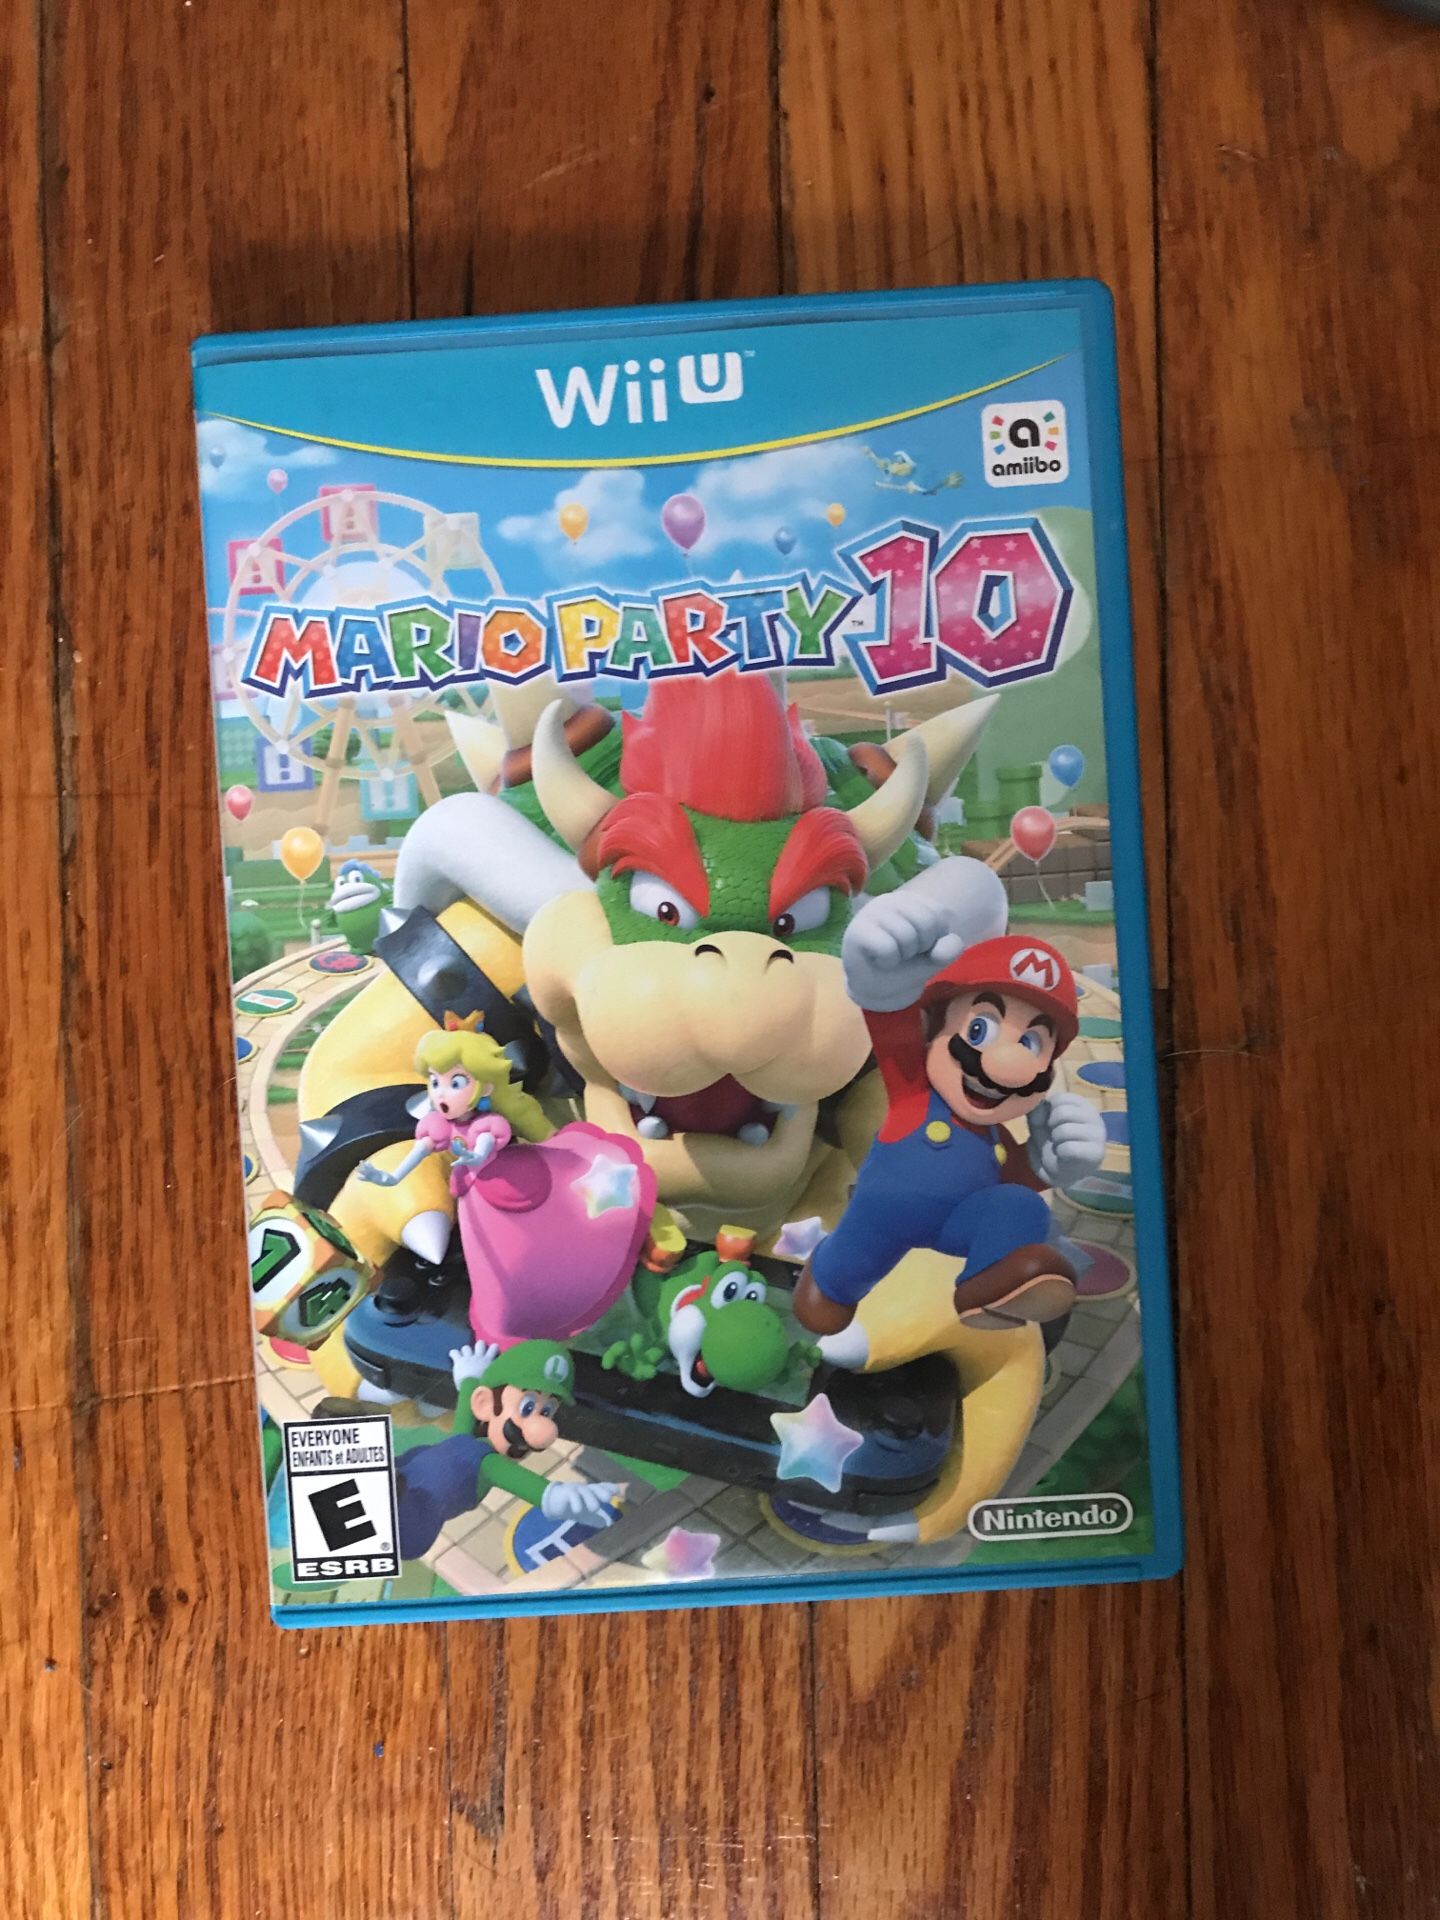 Wii U Mario party 10